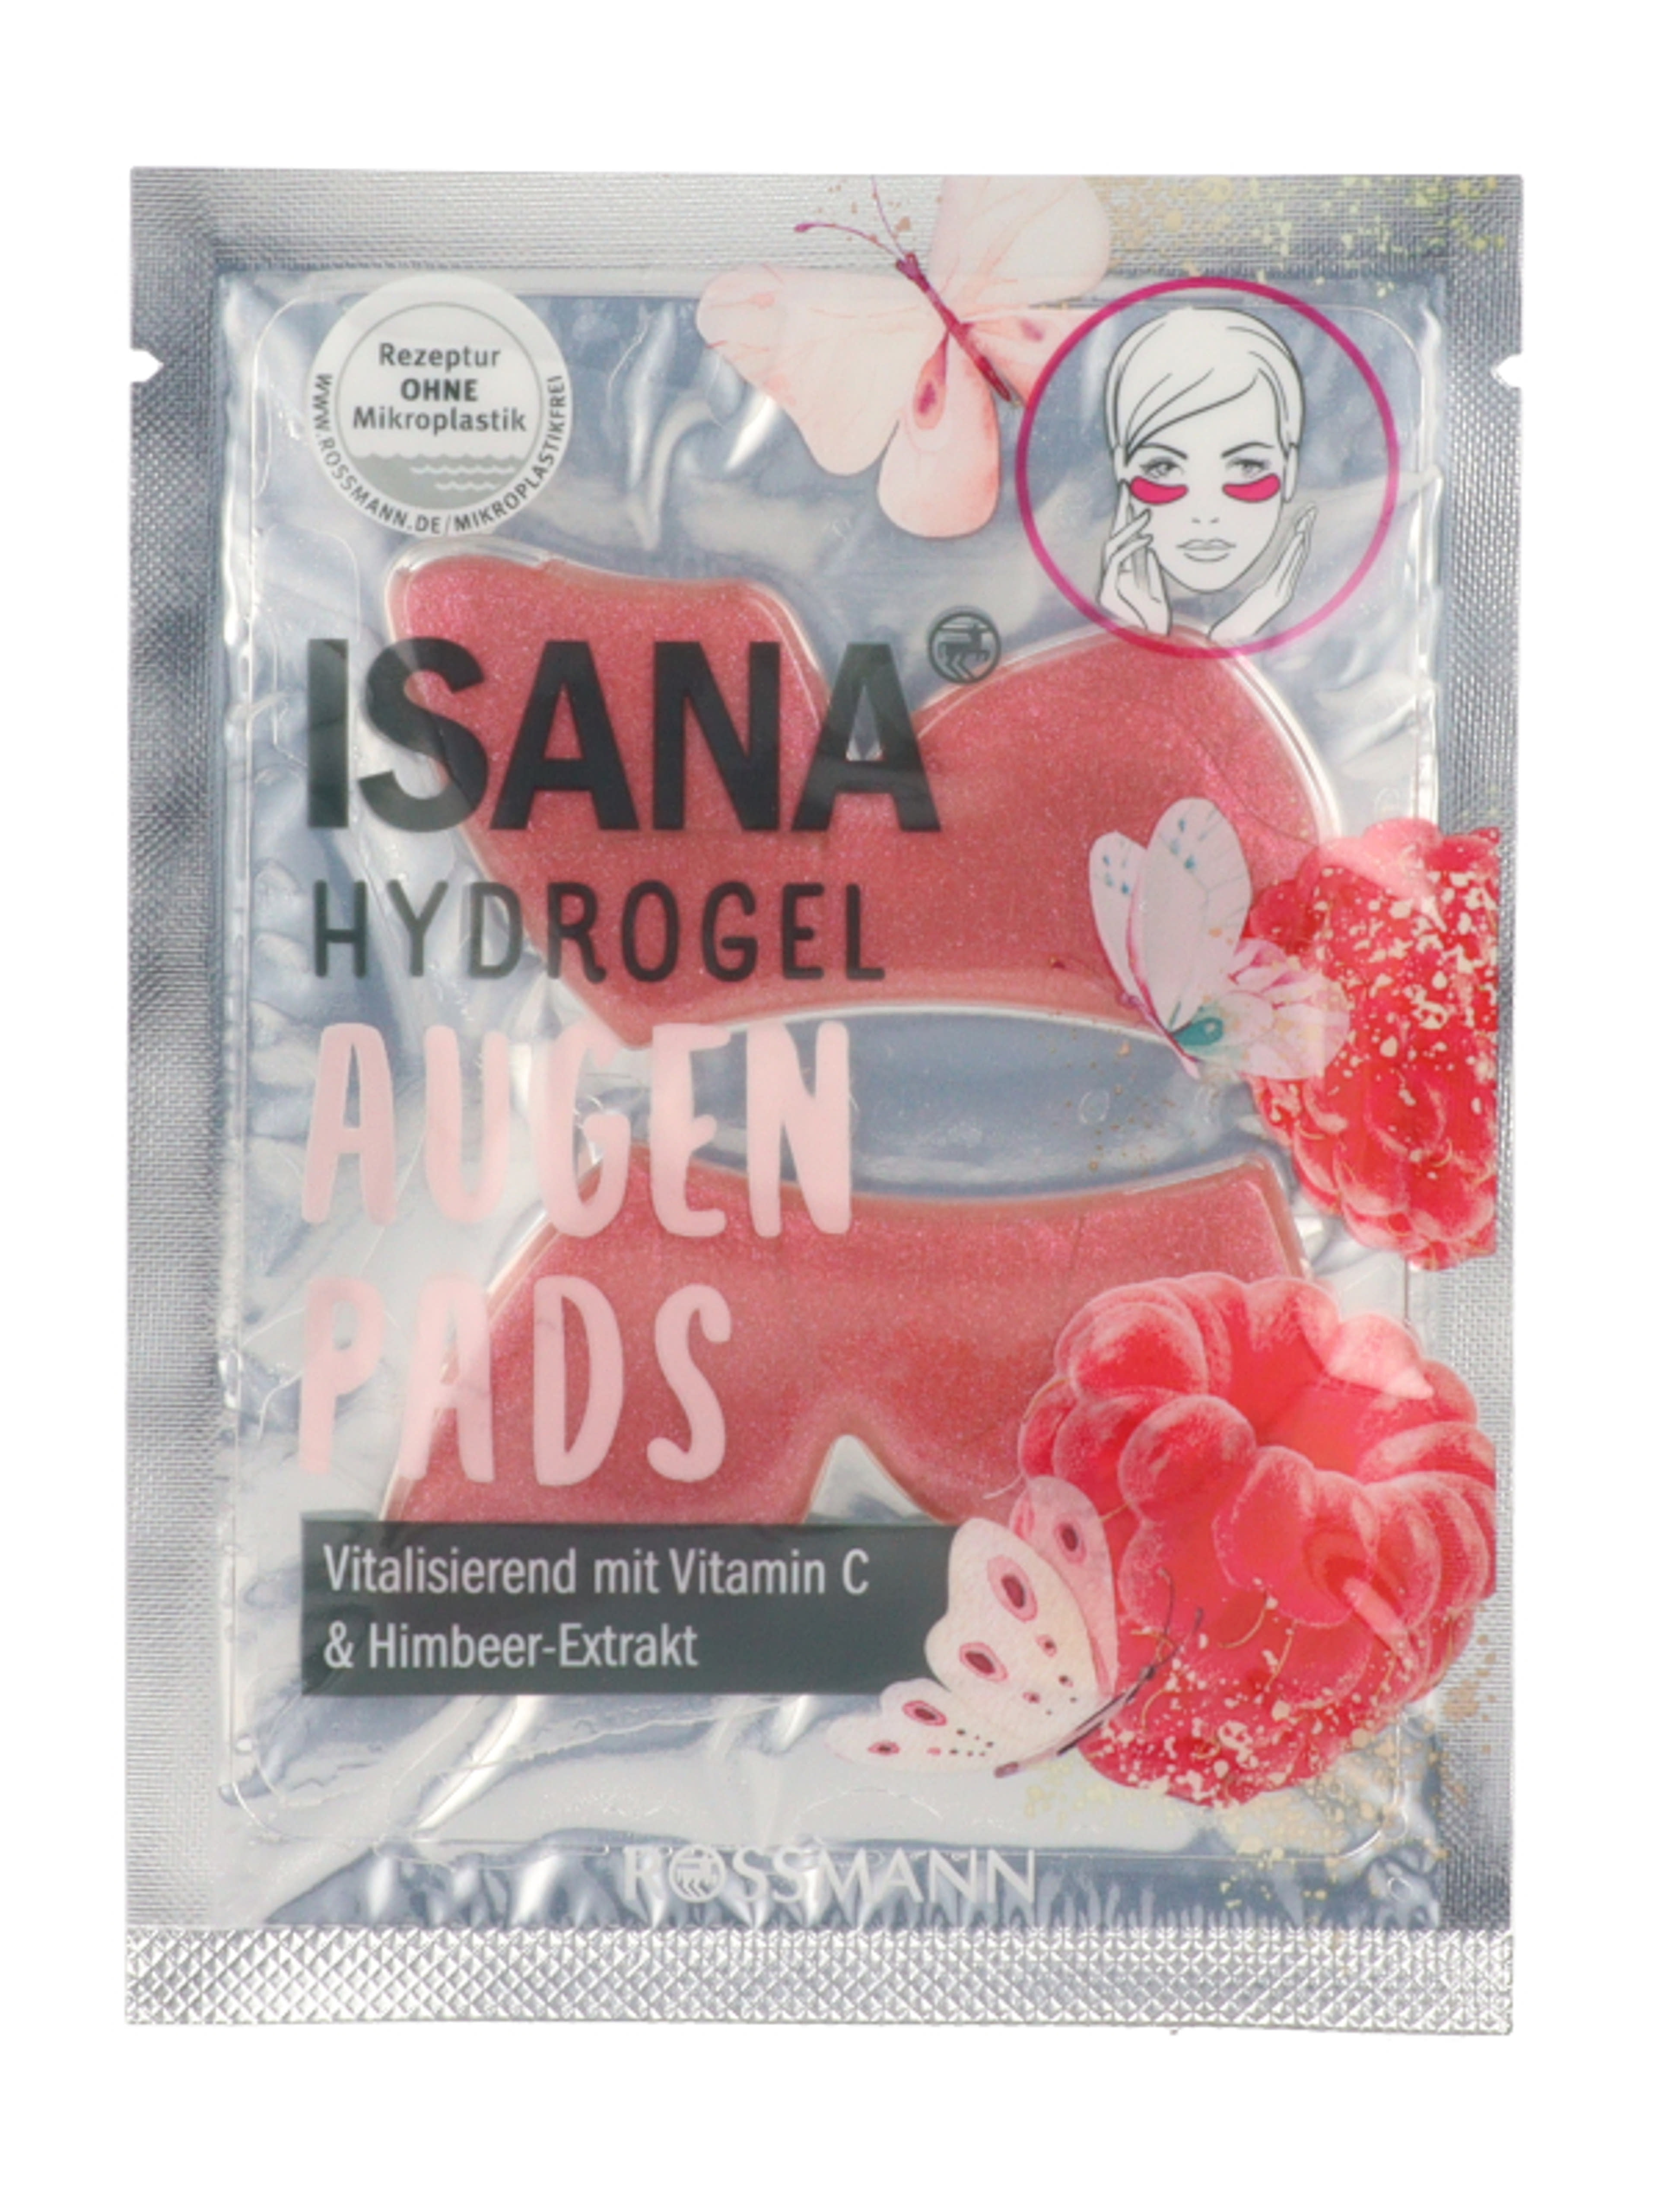 Isana Hydrogel szemkörnyékápoló tapasz, málna és C-vitamin - 1 db